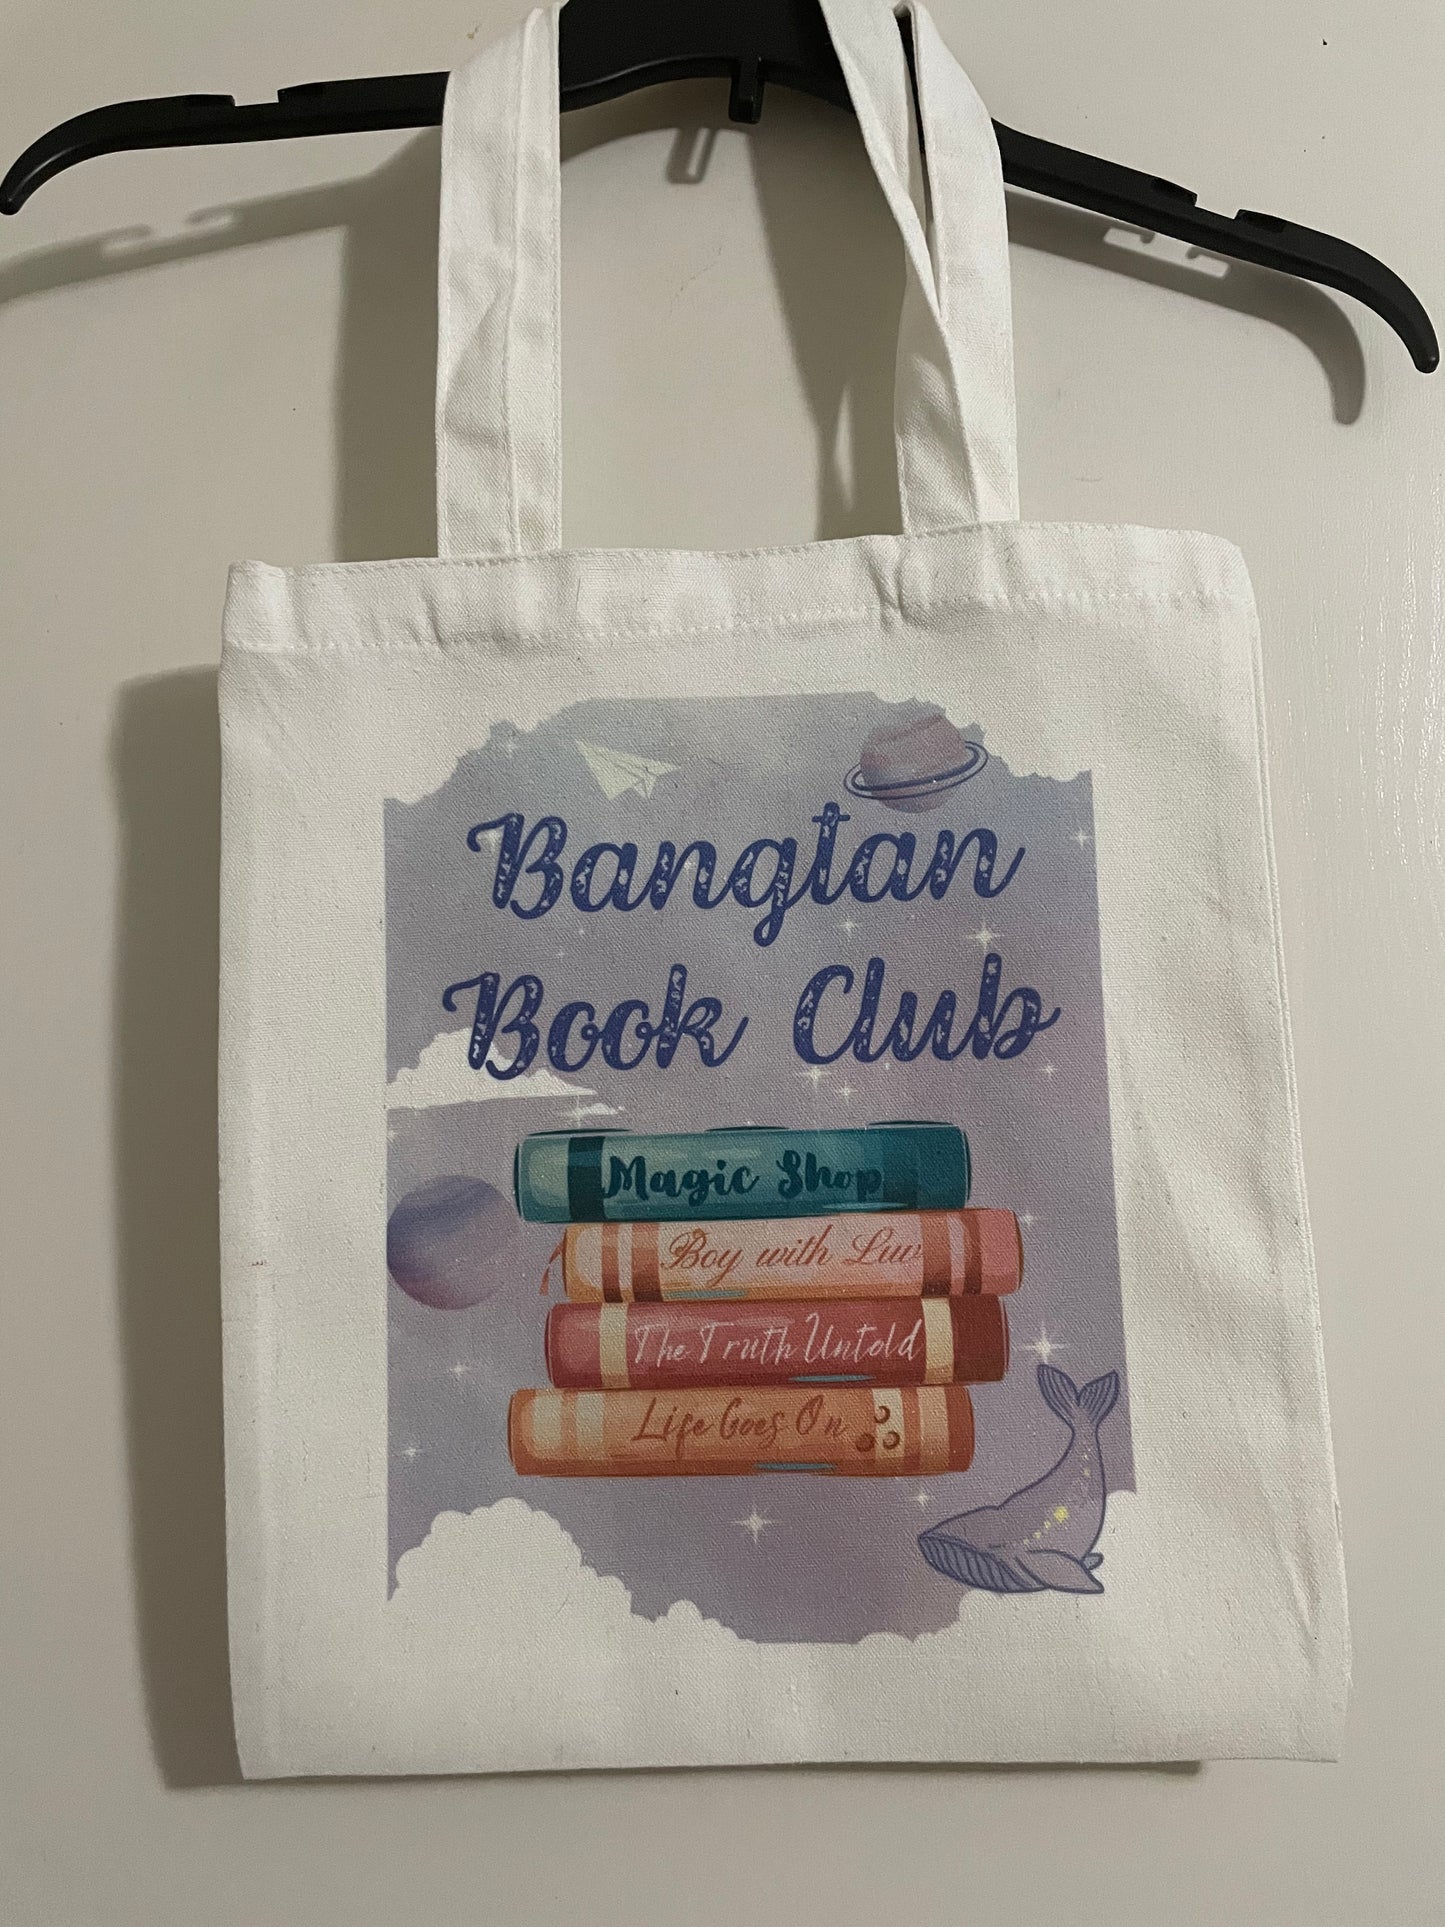 Bangtan Book Club tote bag